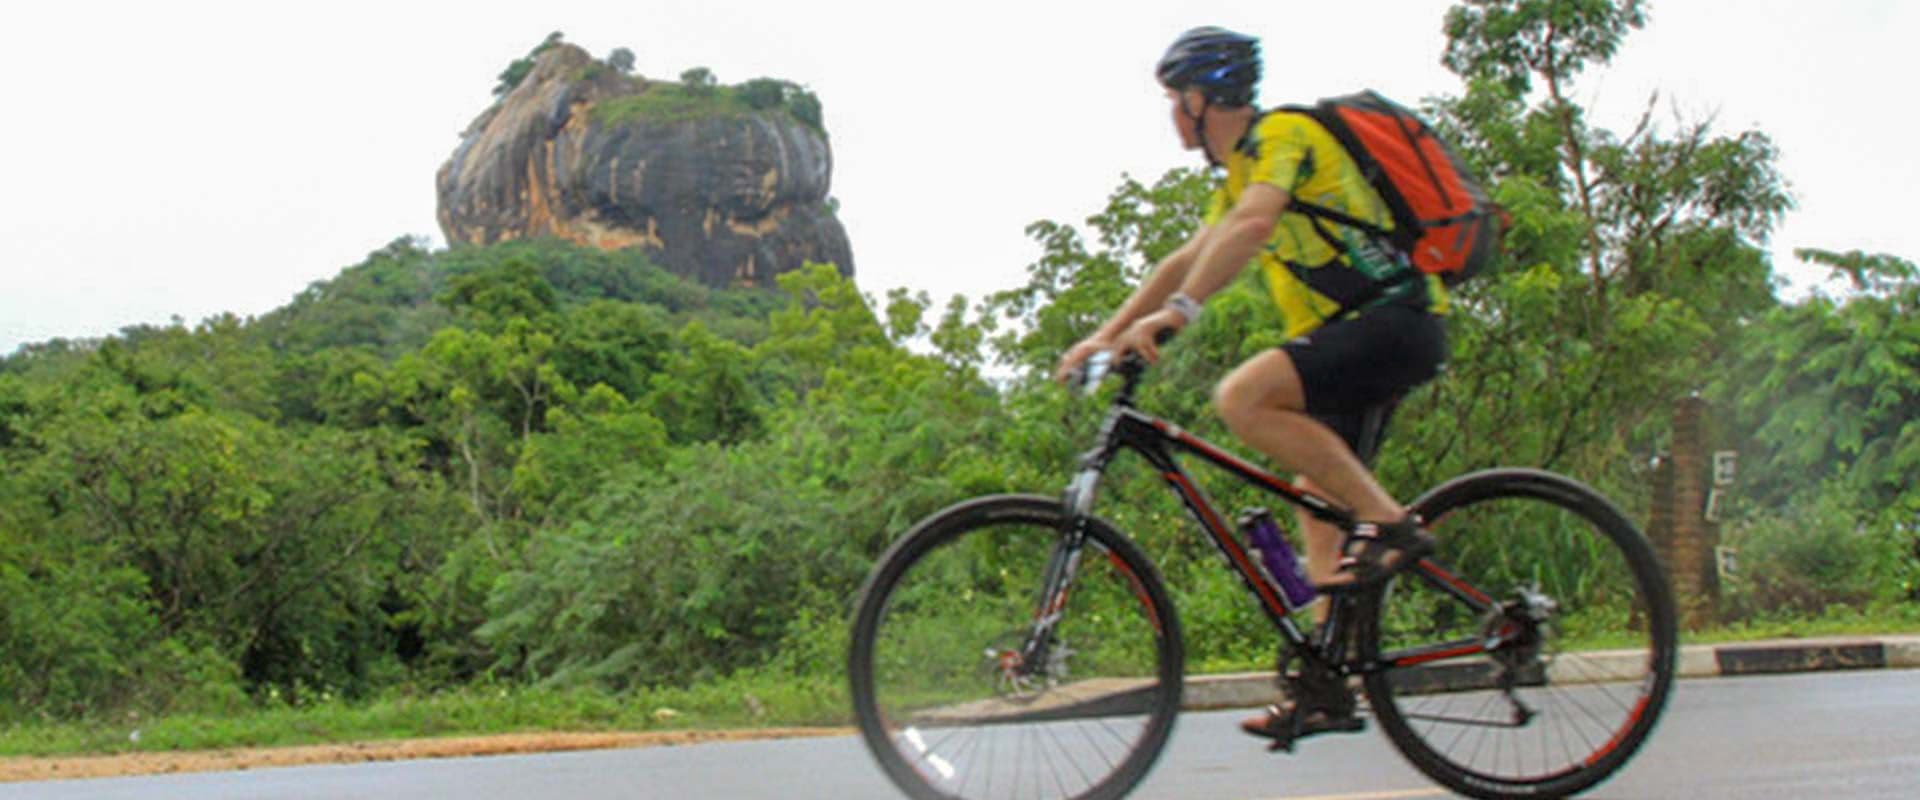 Radfahrer beobachten die Natur der Ruinenstadt Anuradhapura